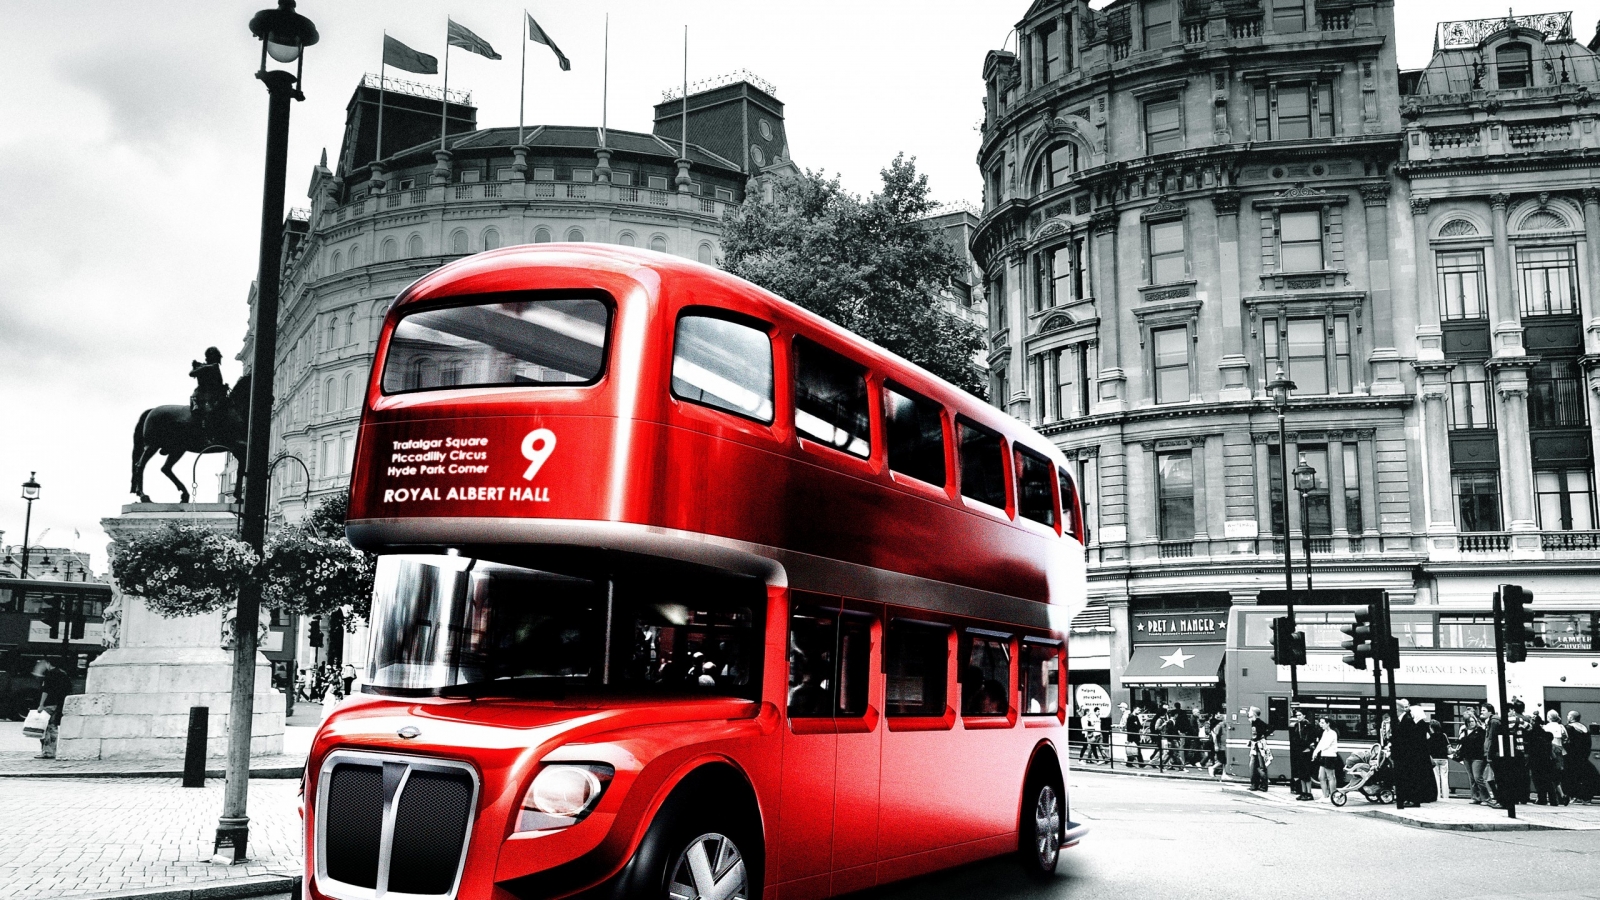 London Bus Design for 1600 x 900 HDTV resolution